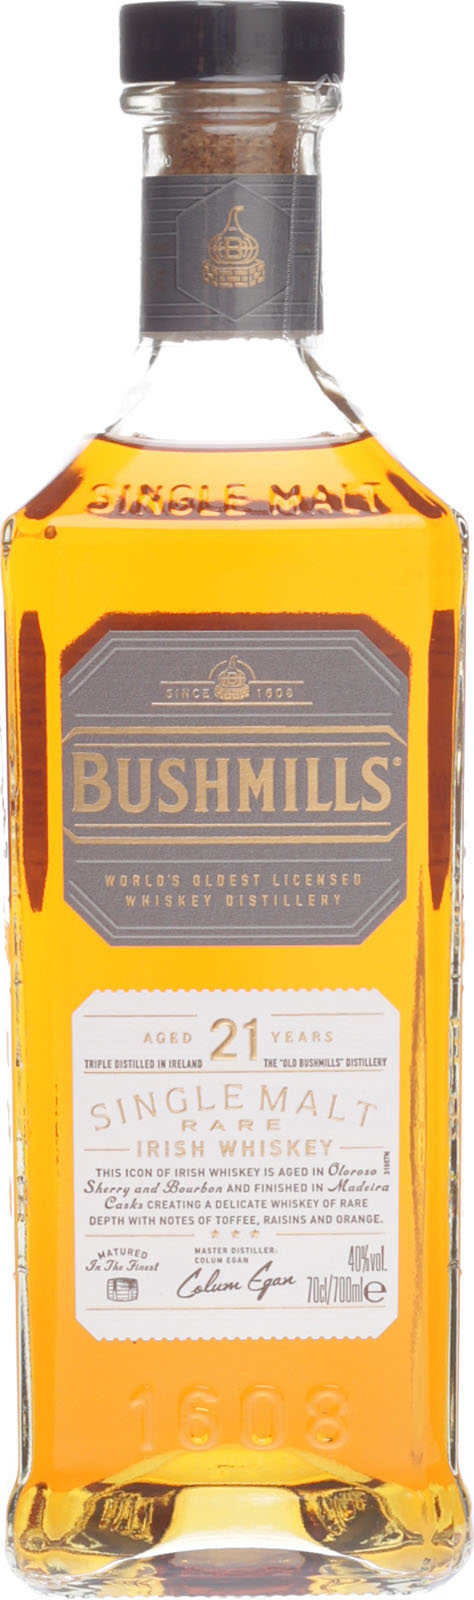 Bushmills 21 Irish Jahre Shop im Whisky günstigen hier